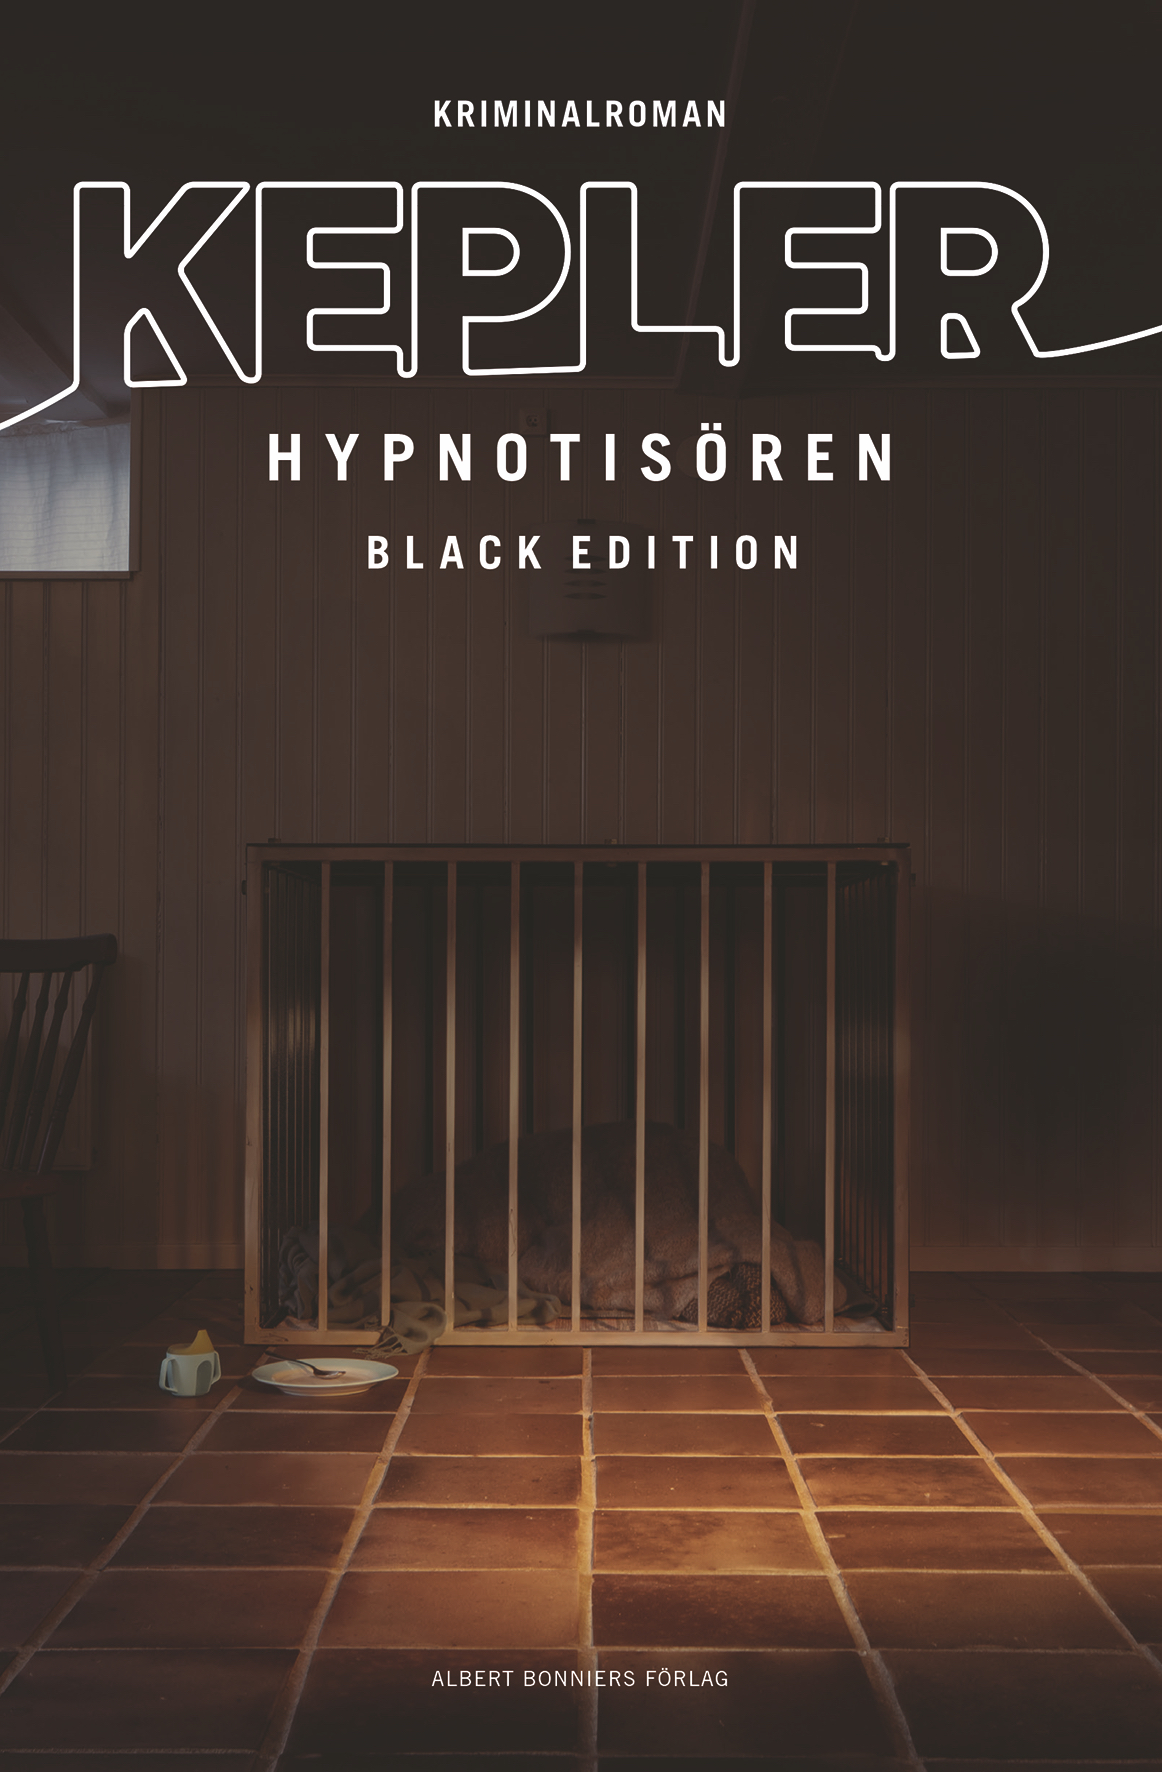 Hypnotisören – The Black Edition